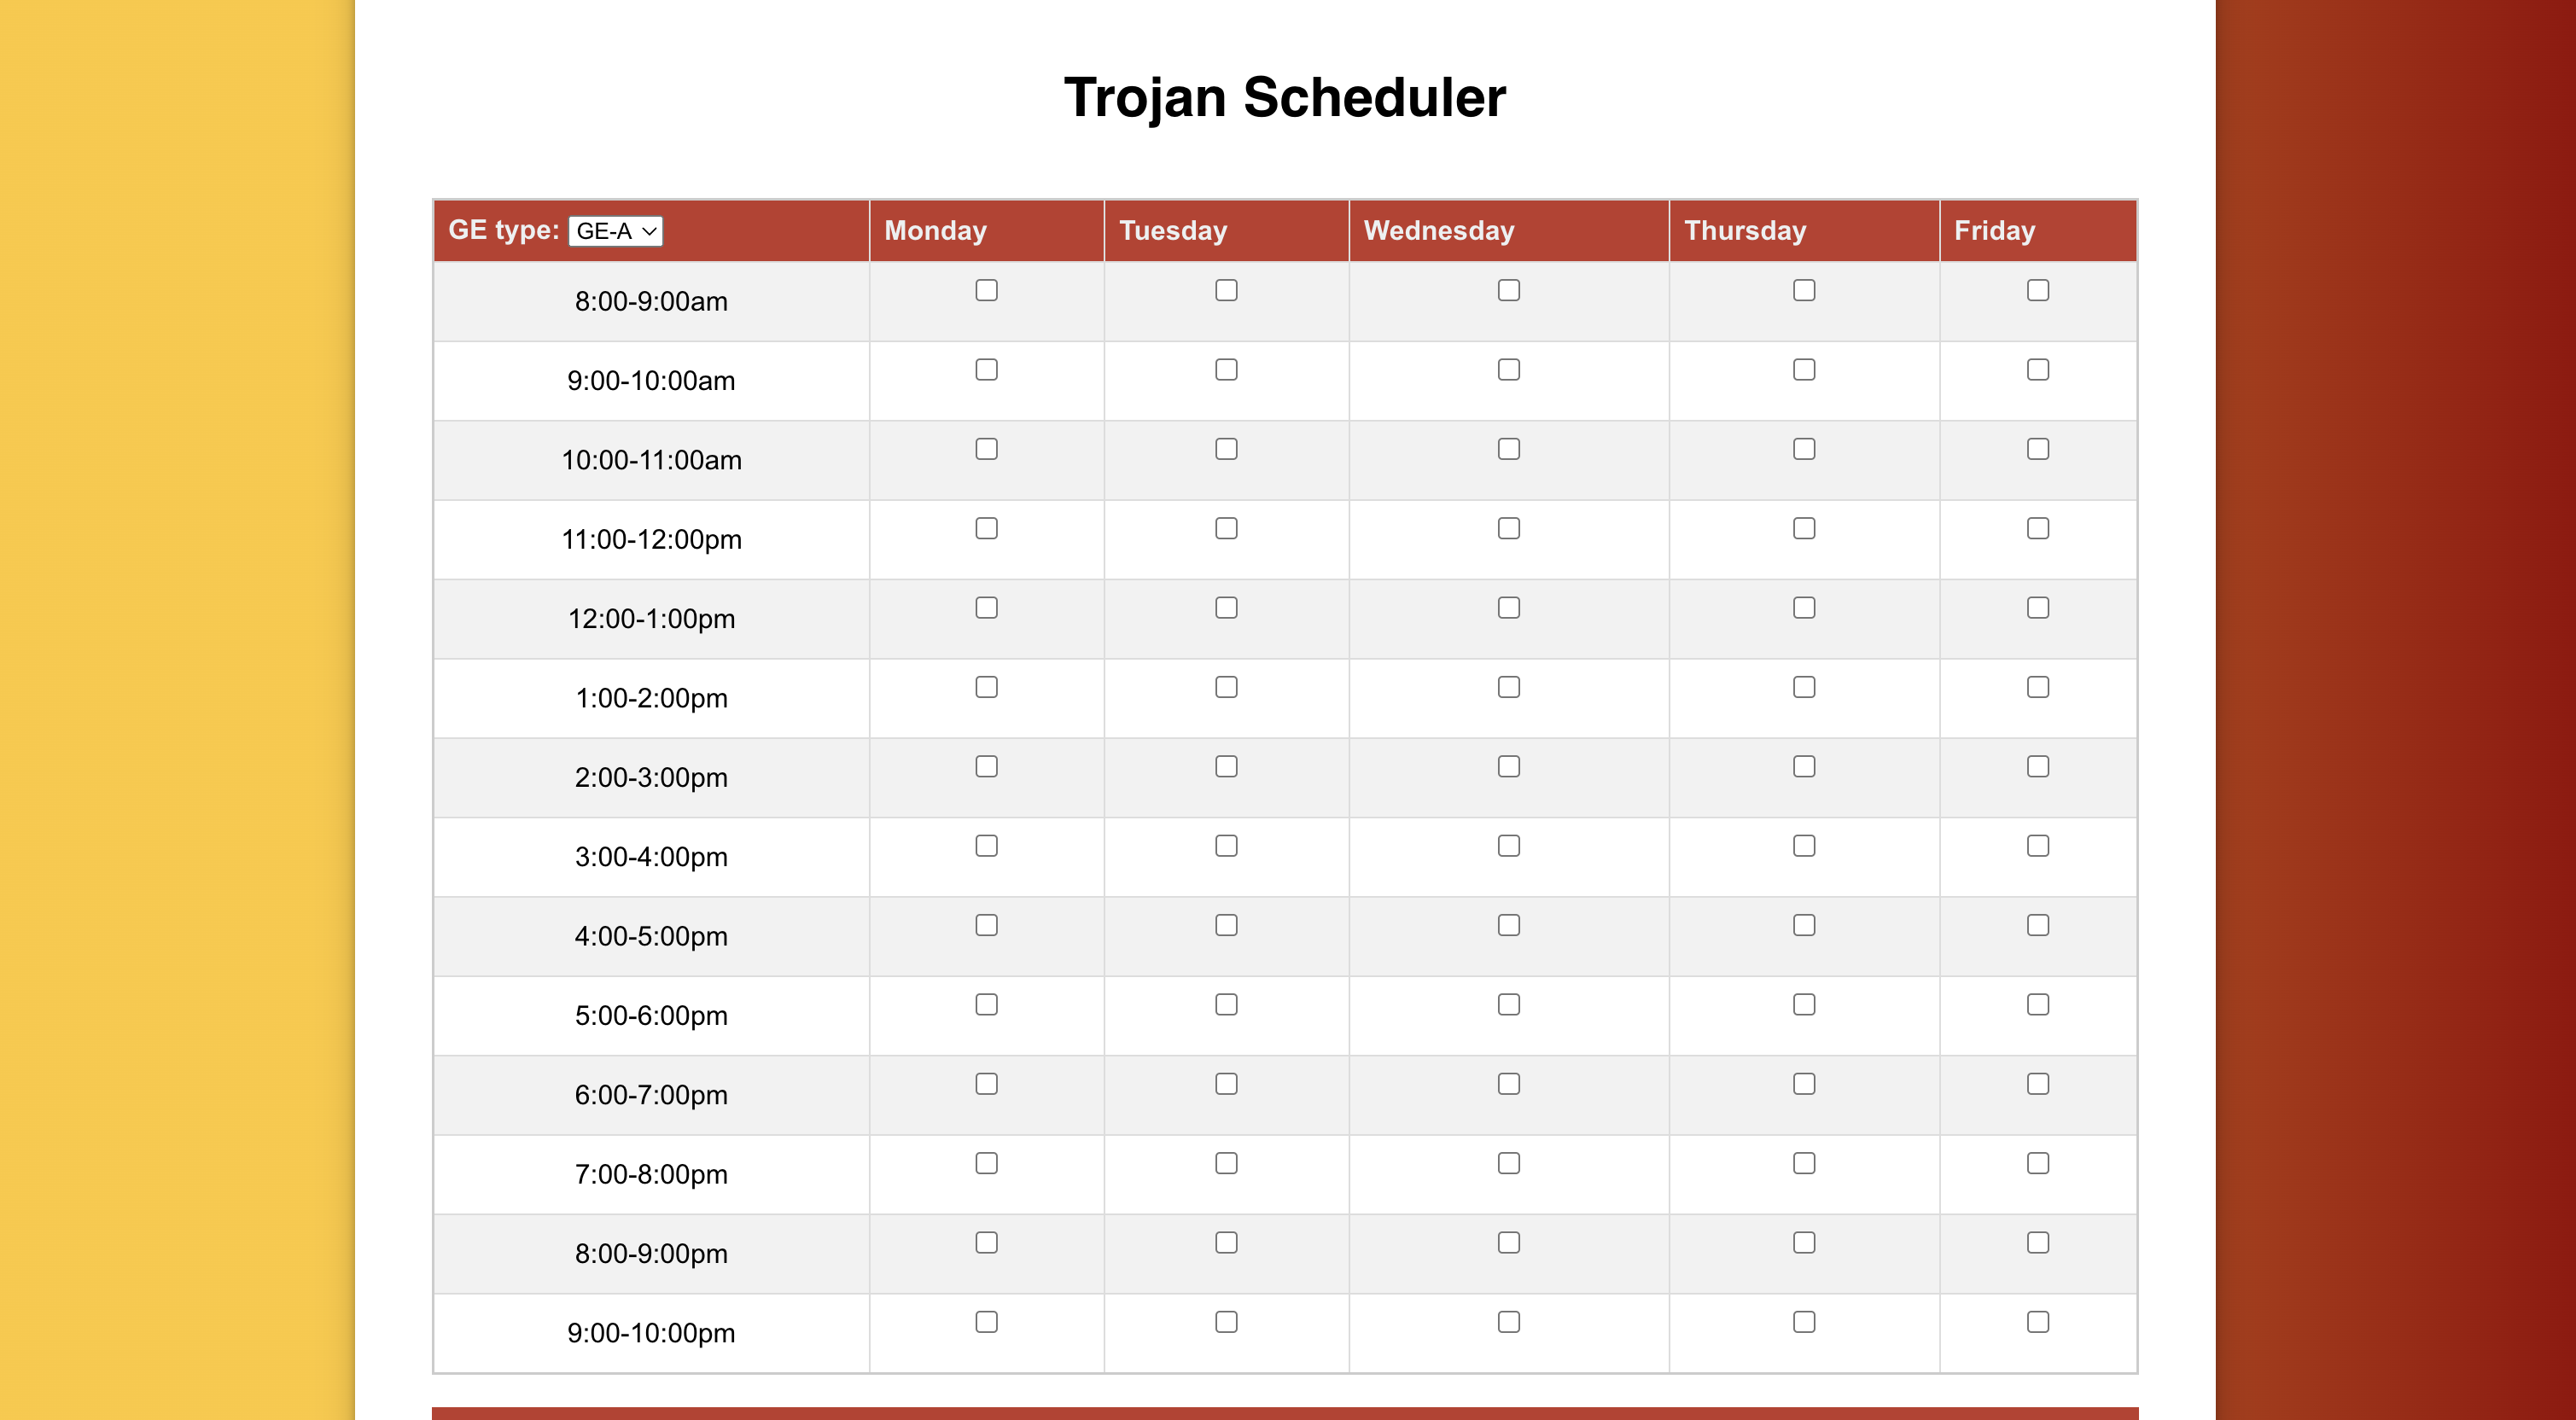 Trojan Scheduler